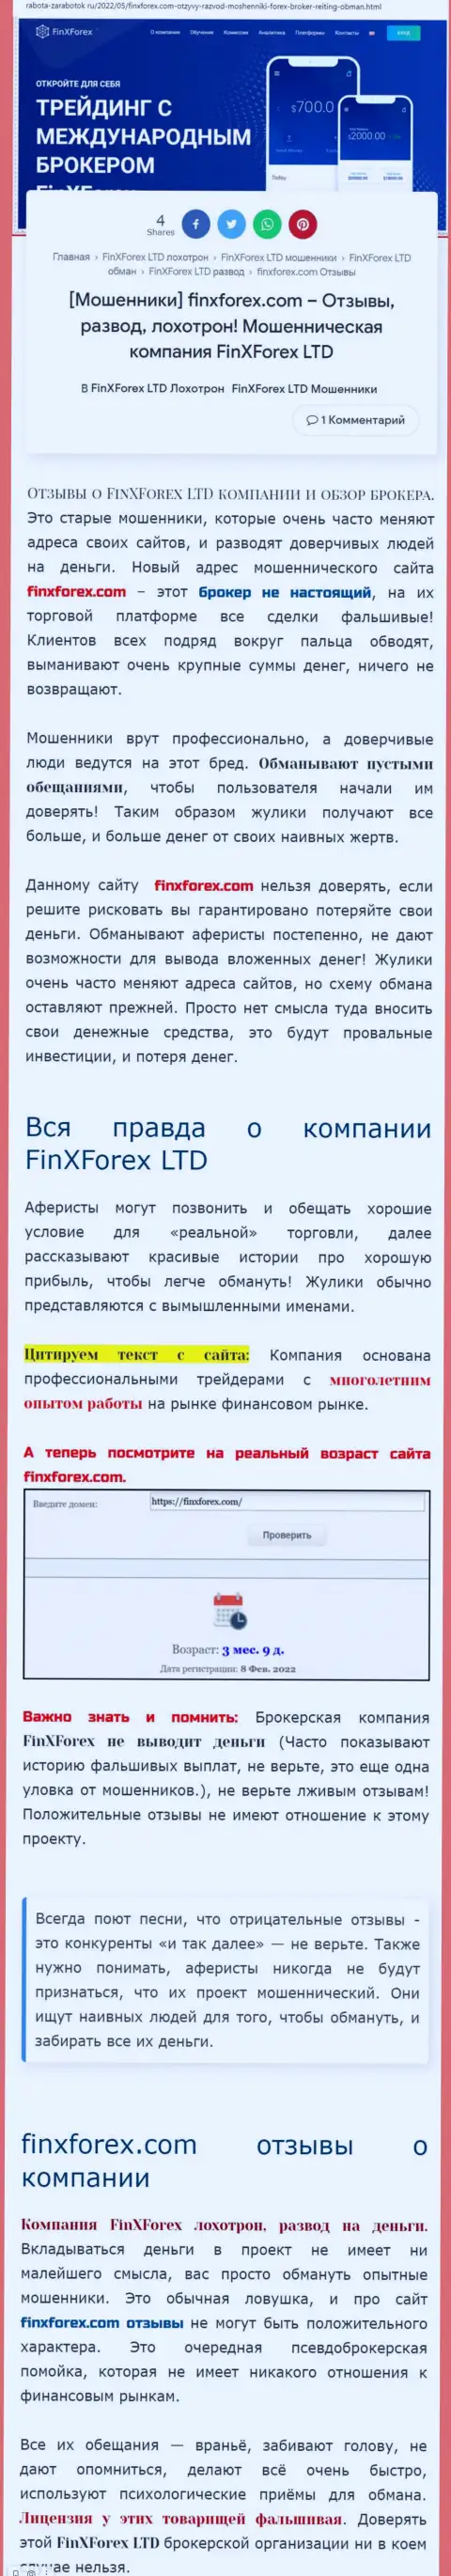 Автор обзорной статьи об Фин Икс Форекс заявляет, что в конторе FinXForex Com дурачат